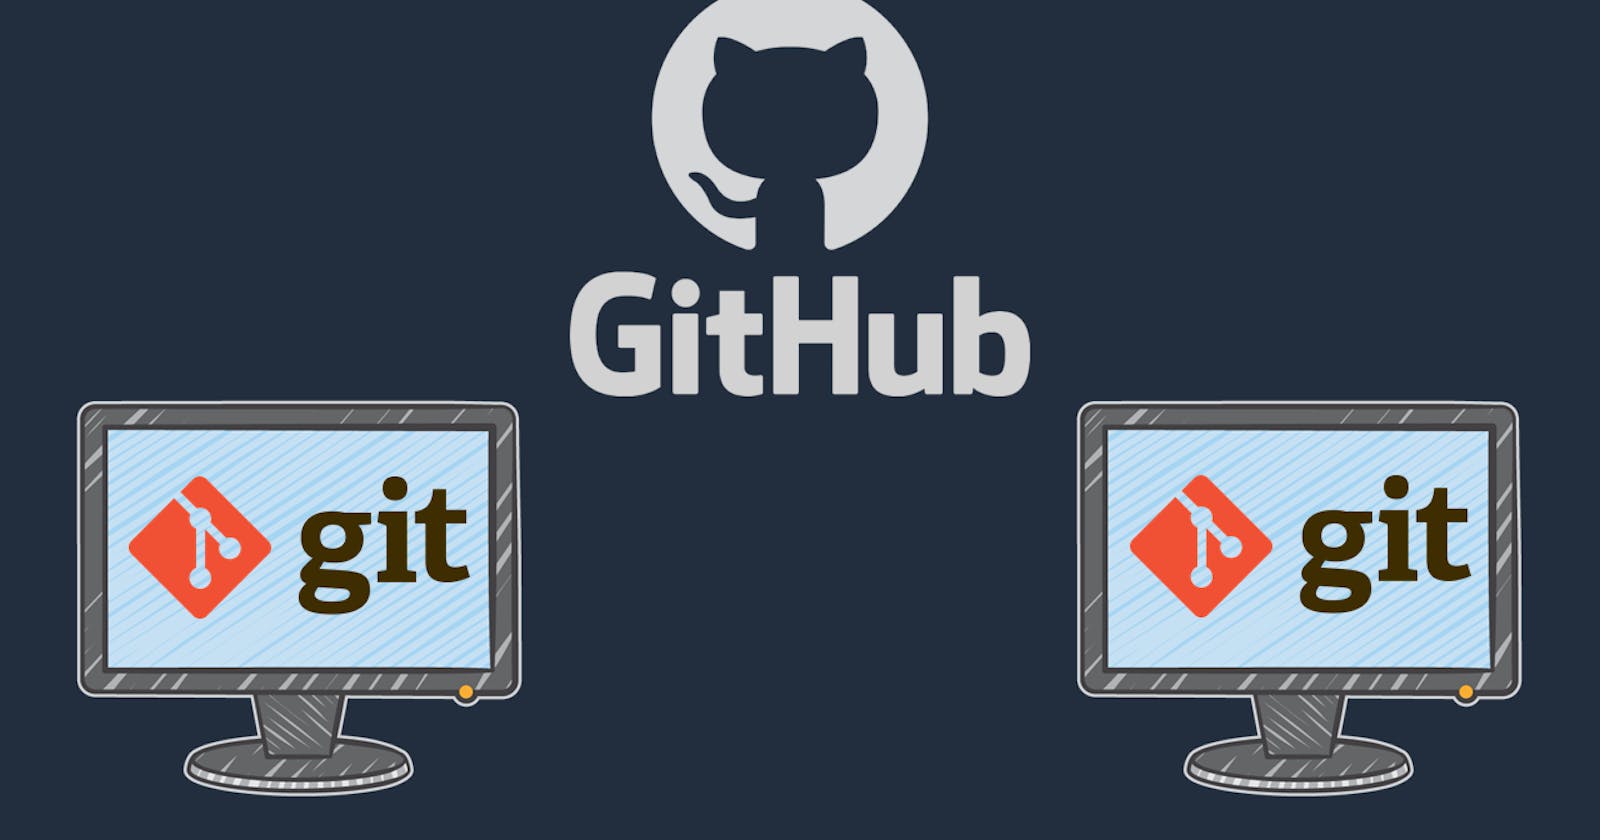 Day 8 Task: Basic Git & GitHub for DevOps Engineers